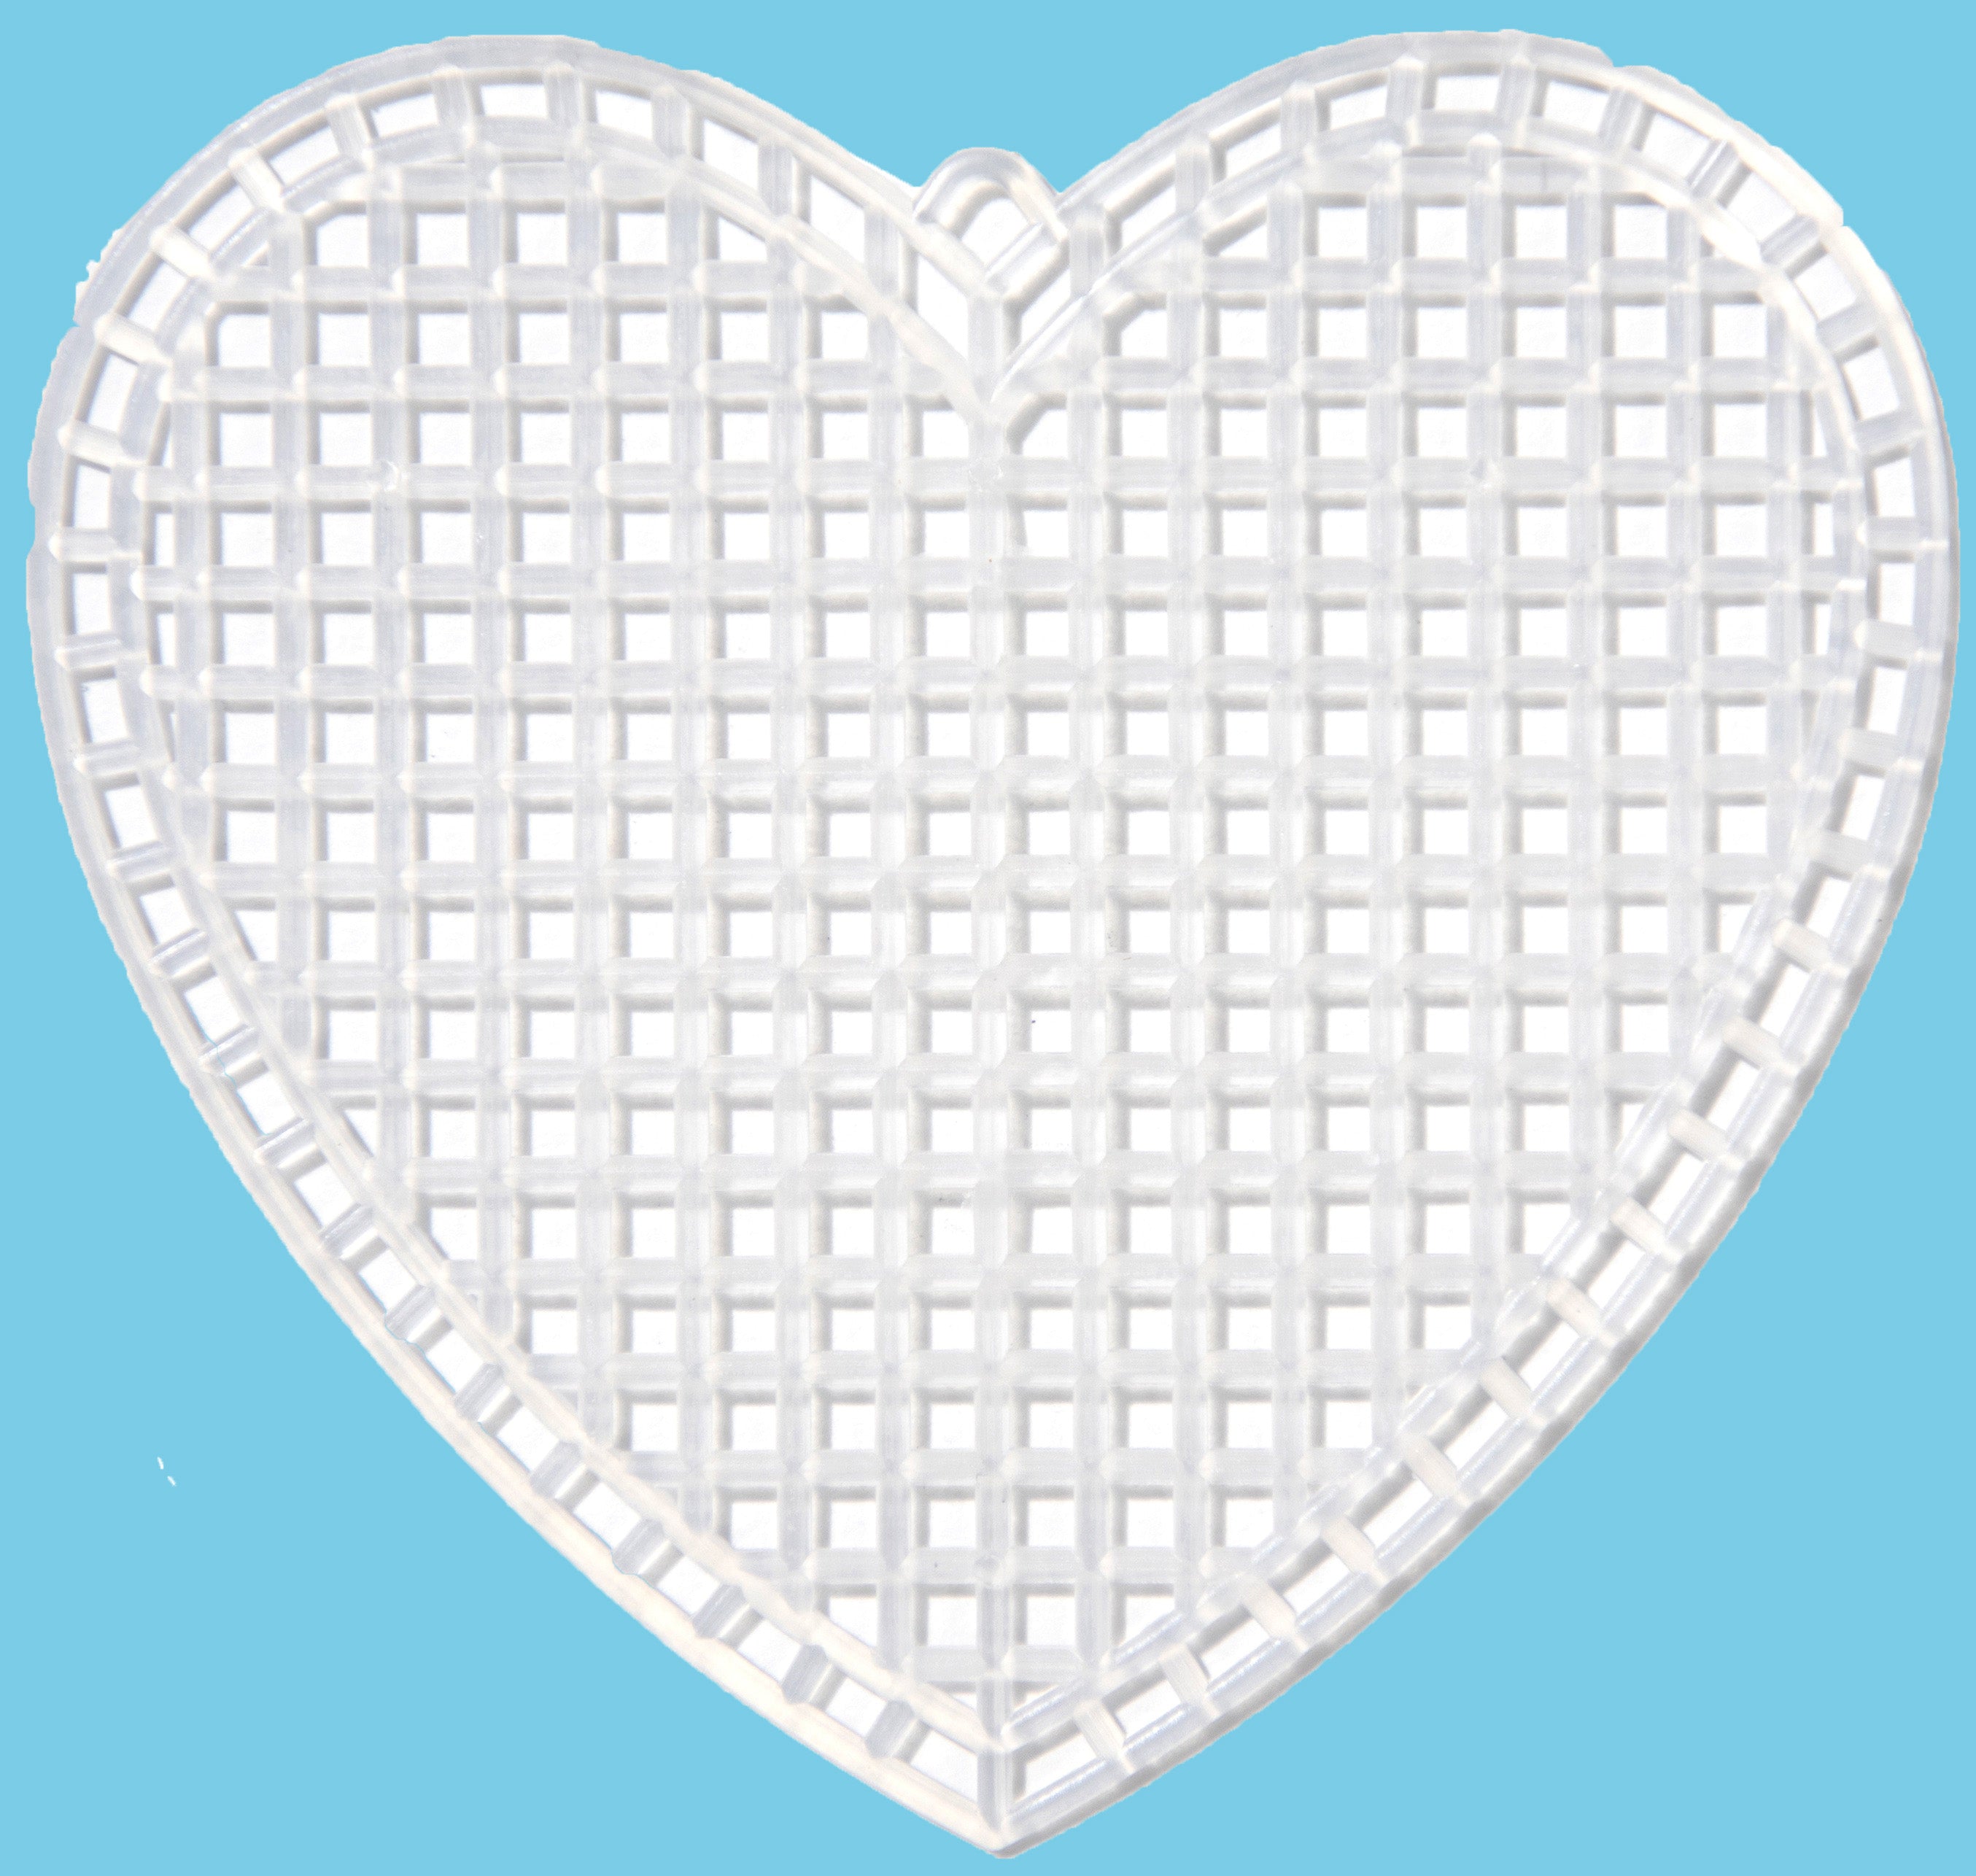 Heart Shaped - Plastic Canvas Shape 7 Count 3 10/Pkg